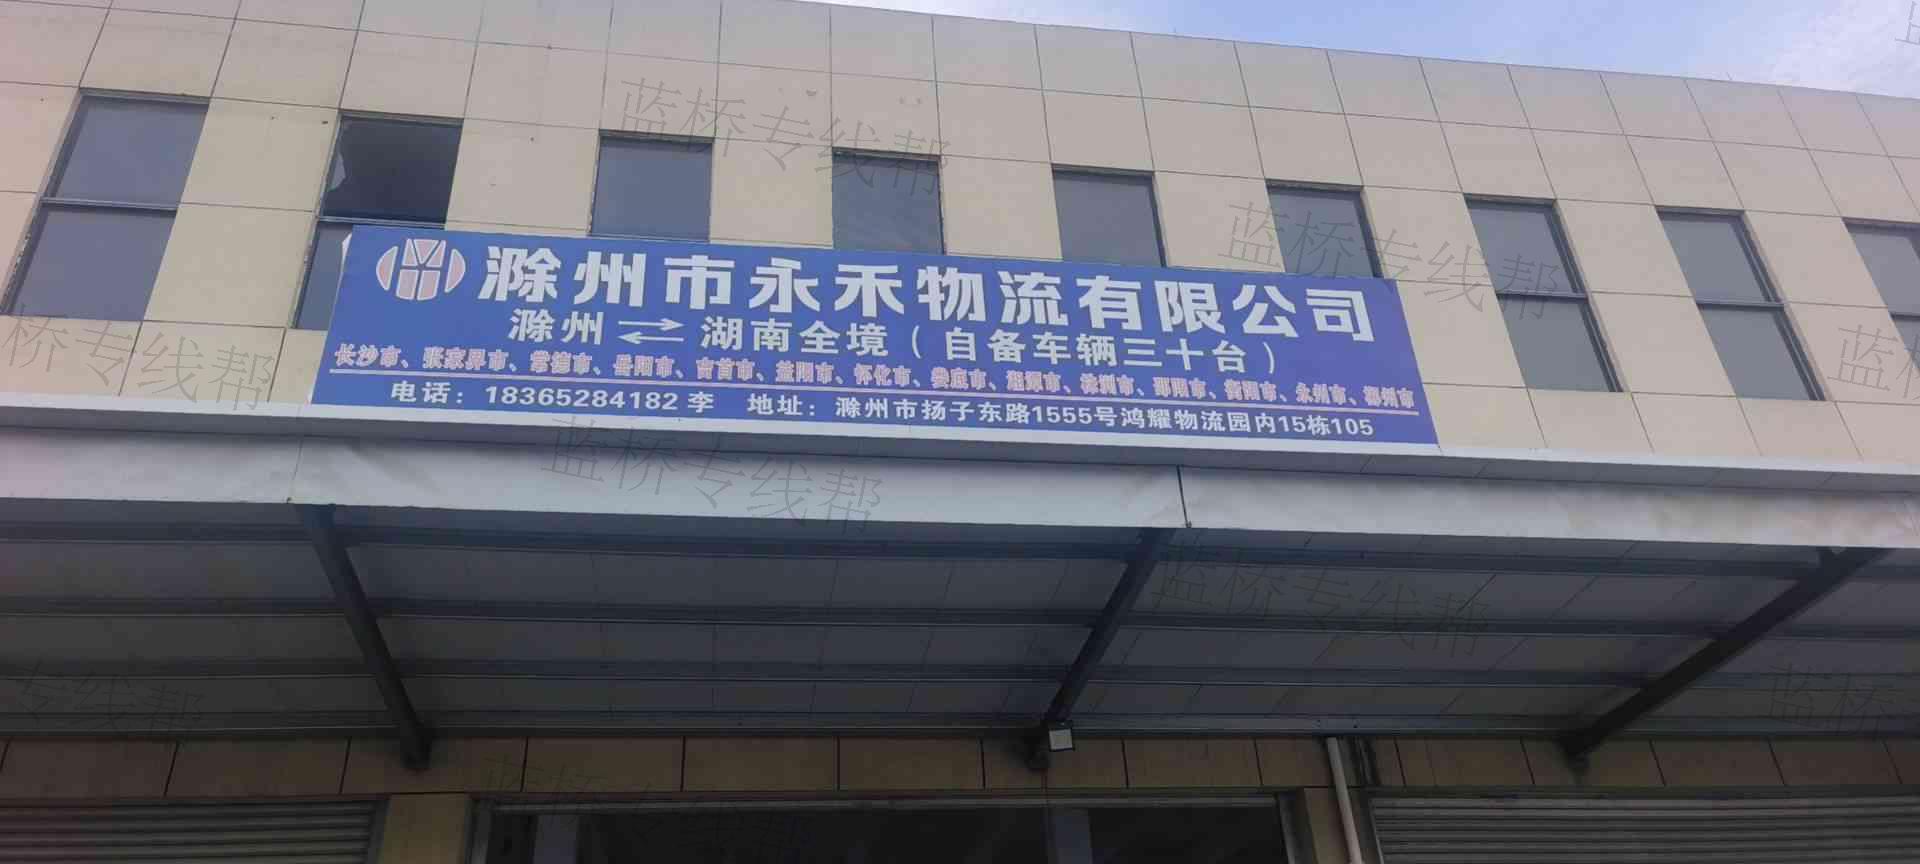 滁州市永禾物流有限公司